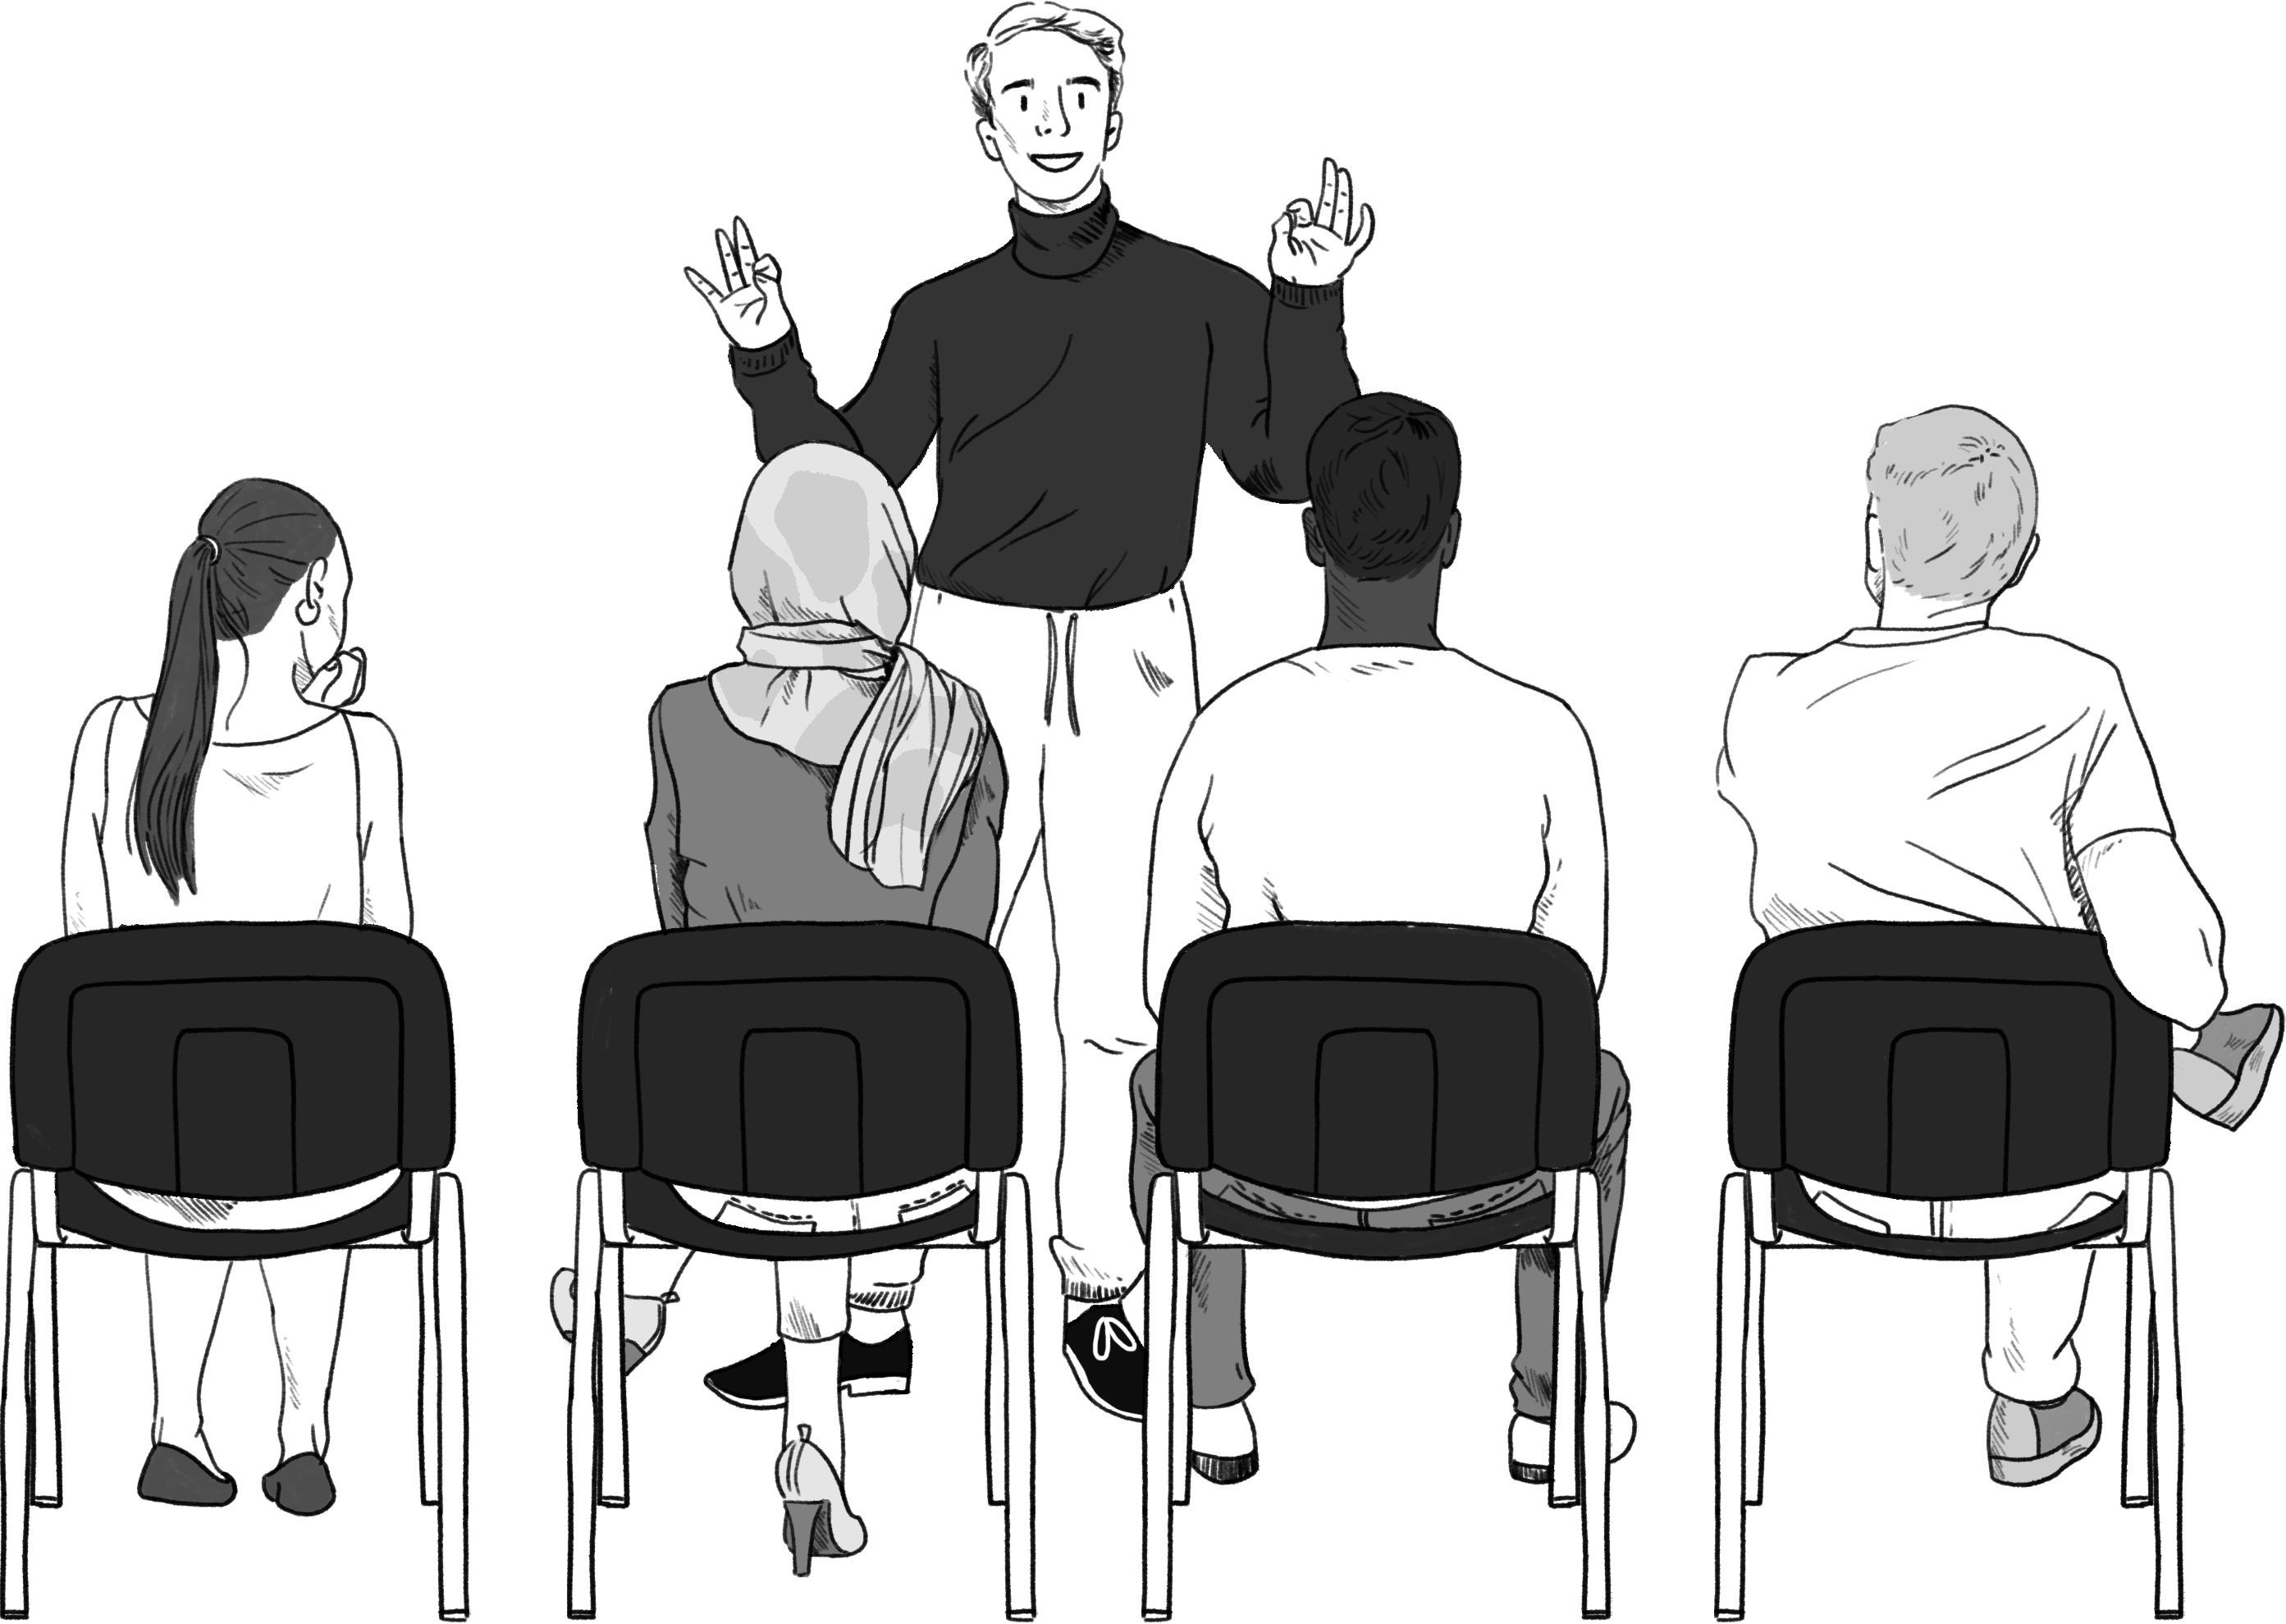 Illustratie:Senne staat vooraan een groep. De groep zit op stoelen naast elkaar. Senne geeft een uitlegover gender en seksuele diversiteit. 